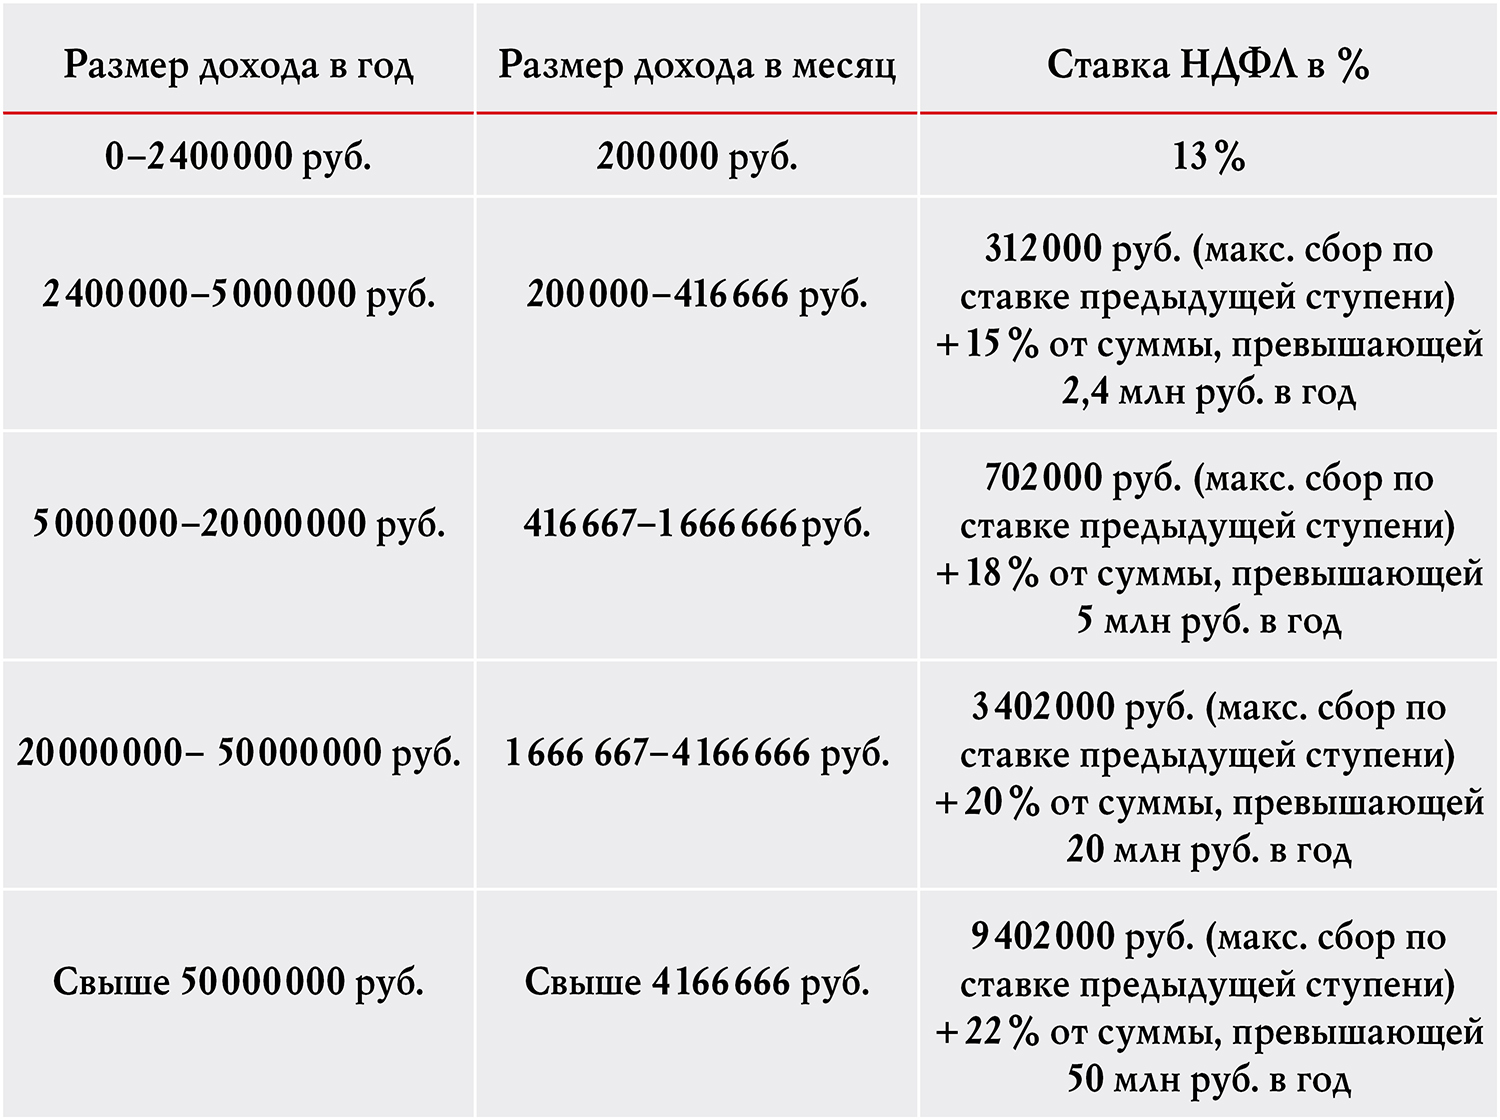 Таблица 1. Источник данных — законопроект на сайте Госдумы